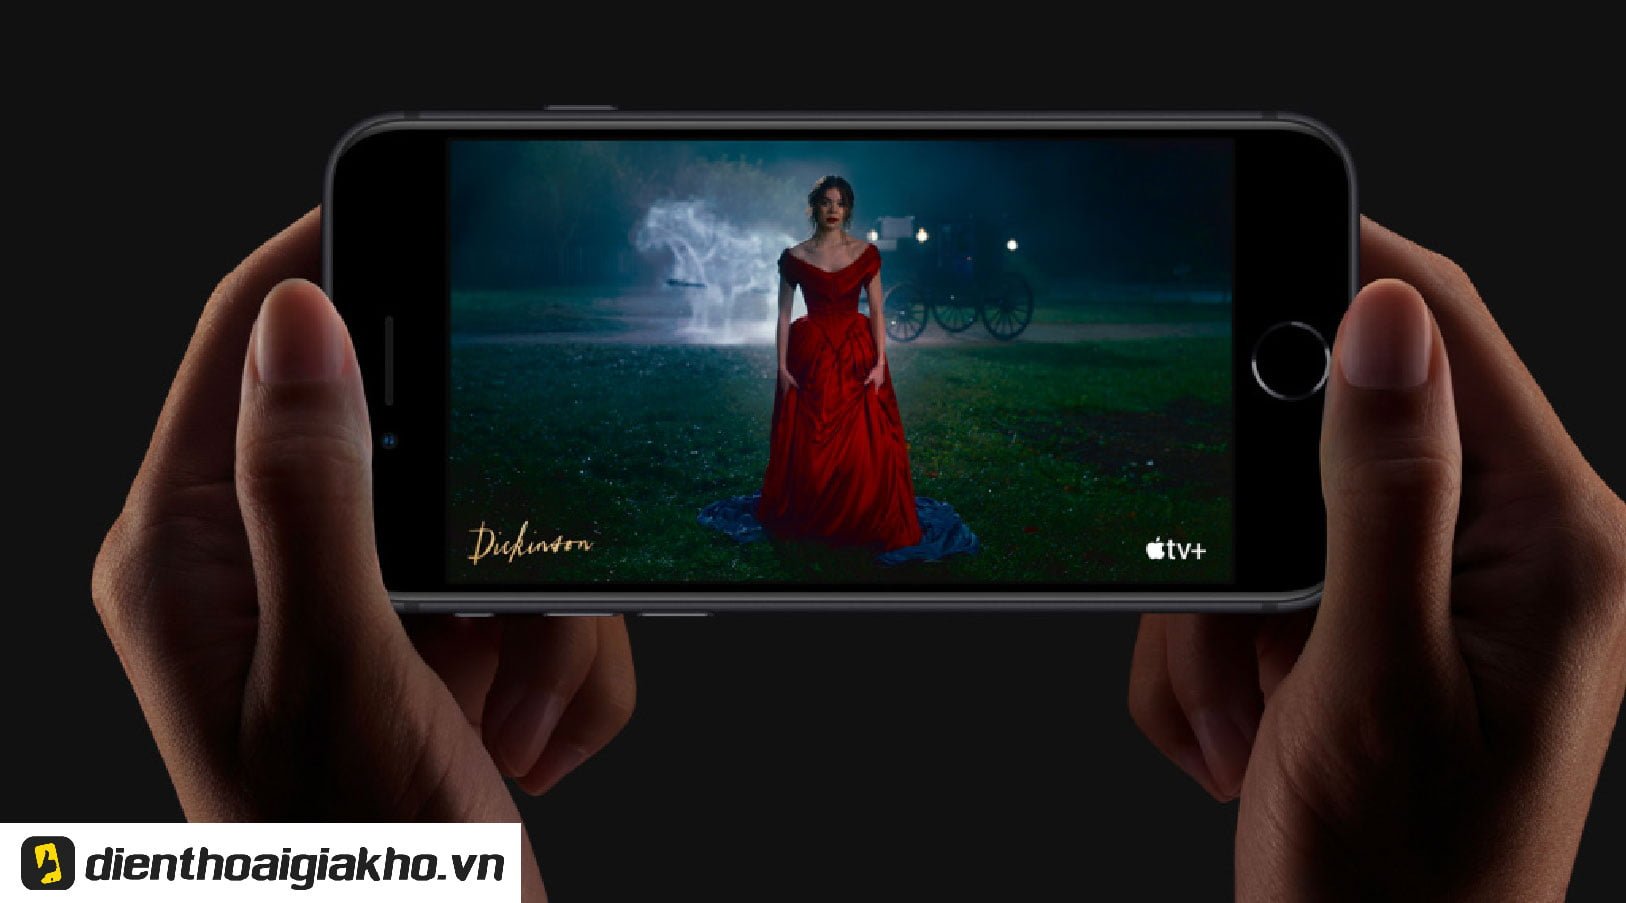 Theo đánh giá, màn hình chuẩn Retina HD của iPhone SE 2020 rất tuyệt